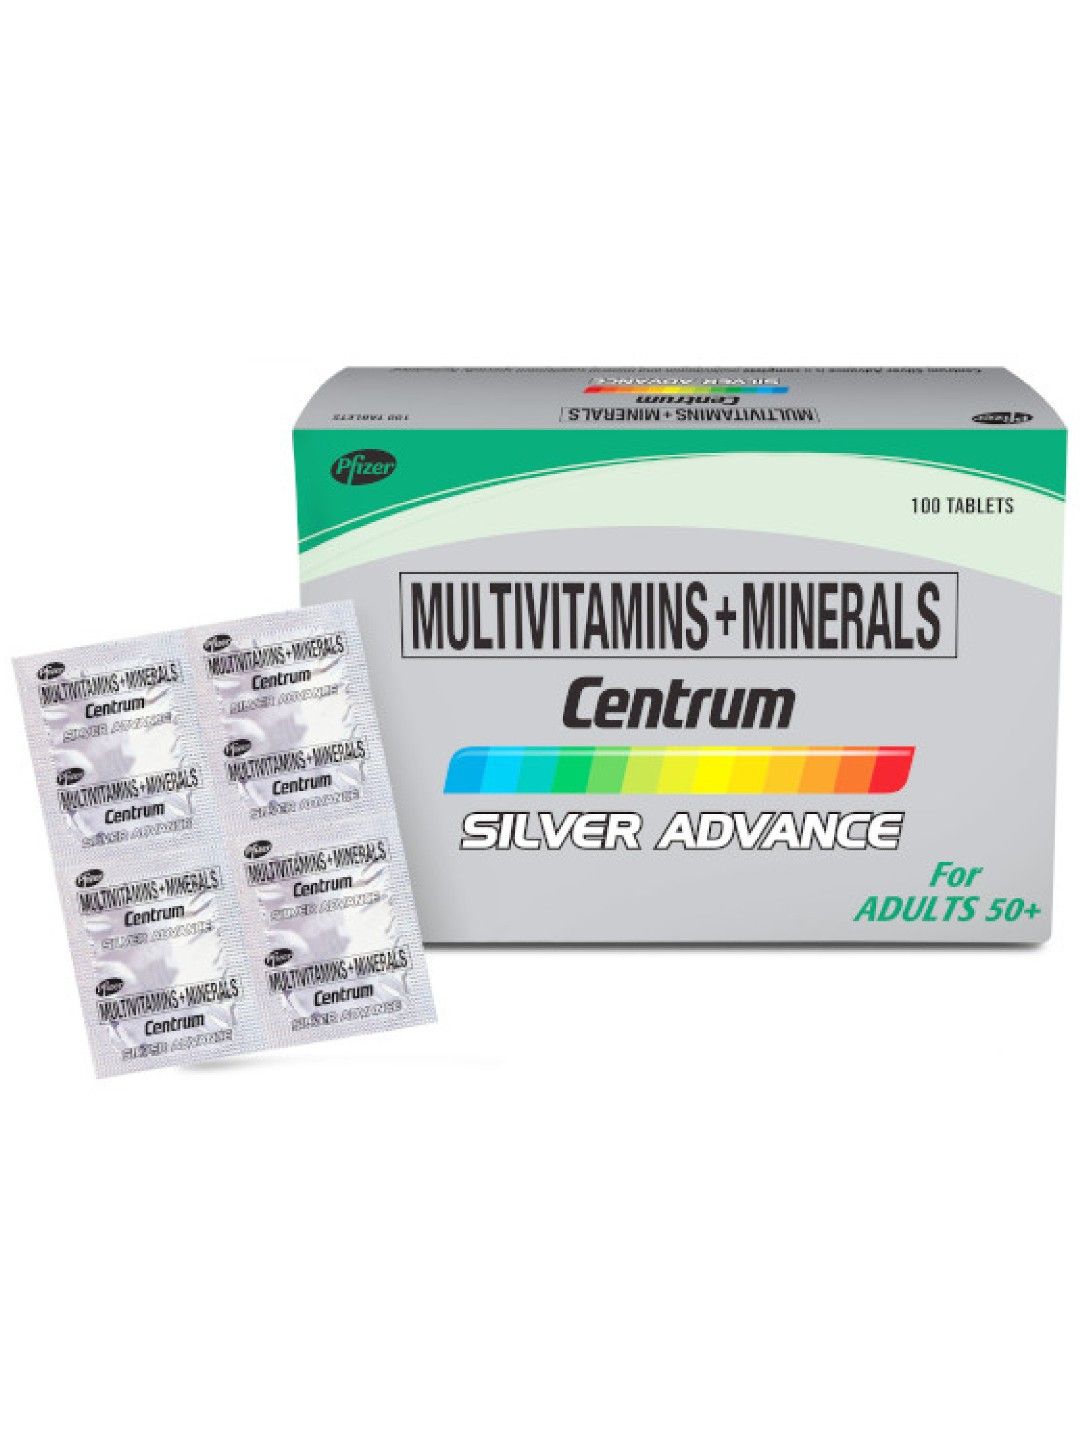 Centrum Silver Advance Multivitamins + Minerals Box (100s)